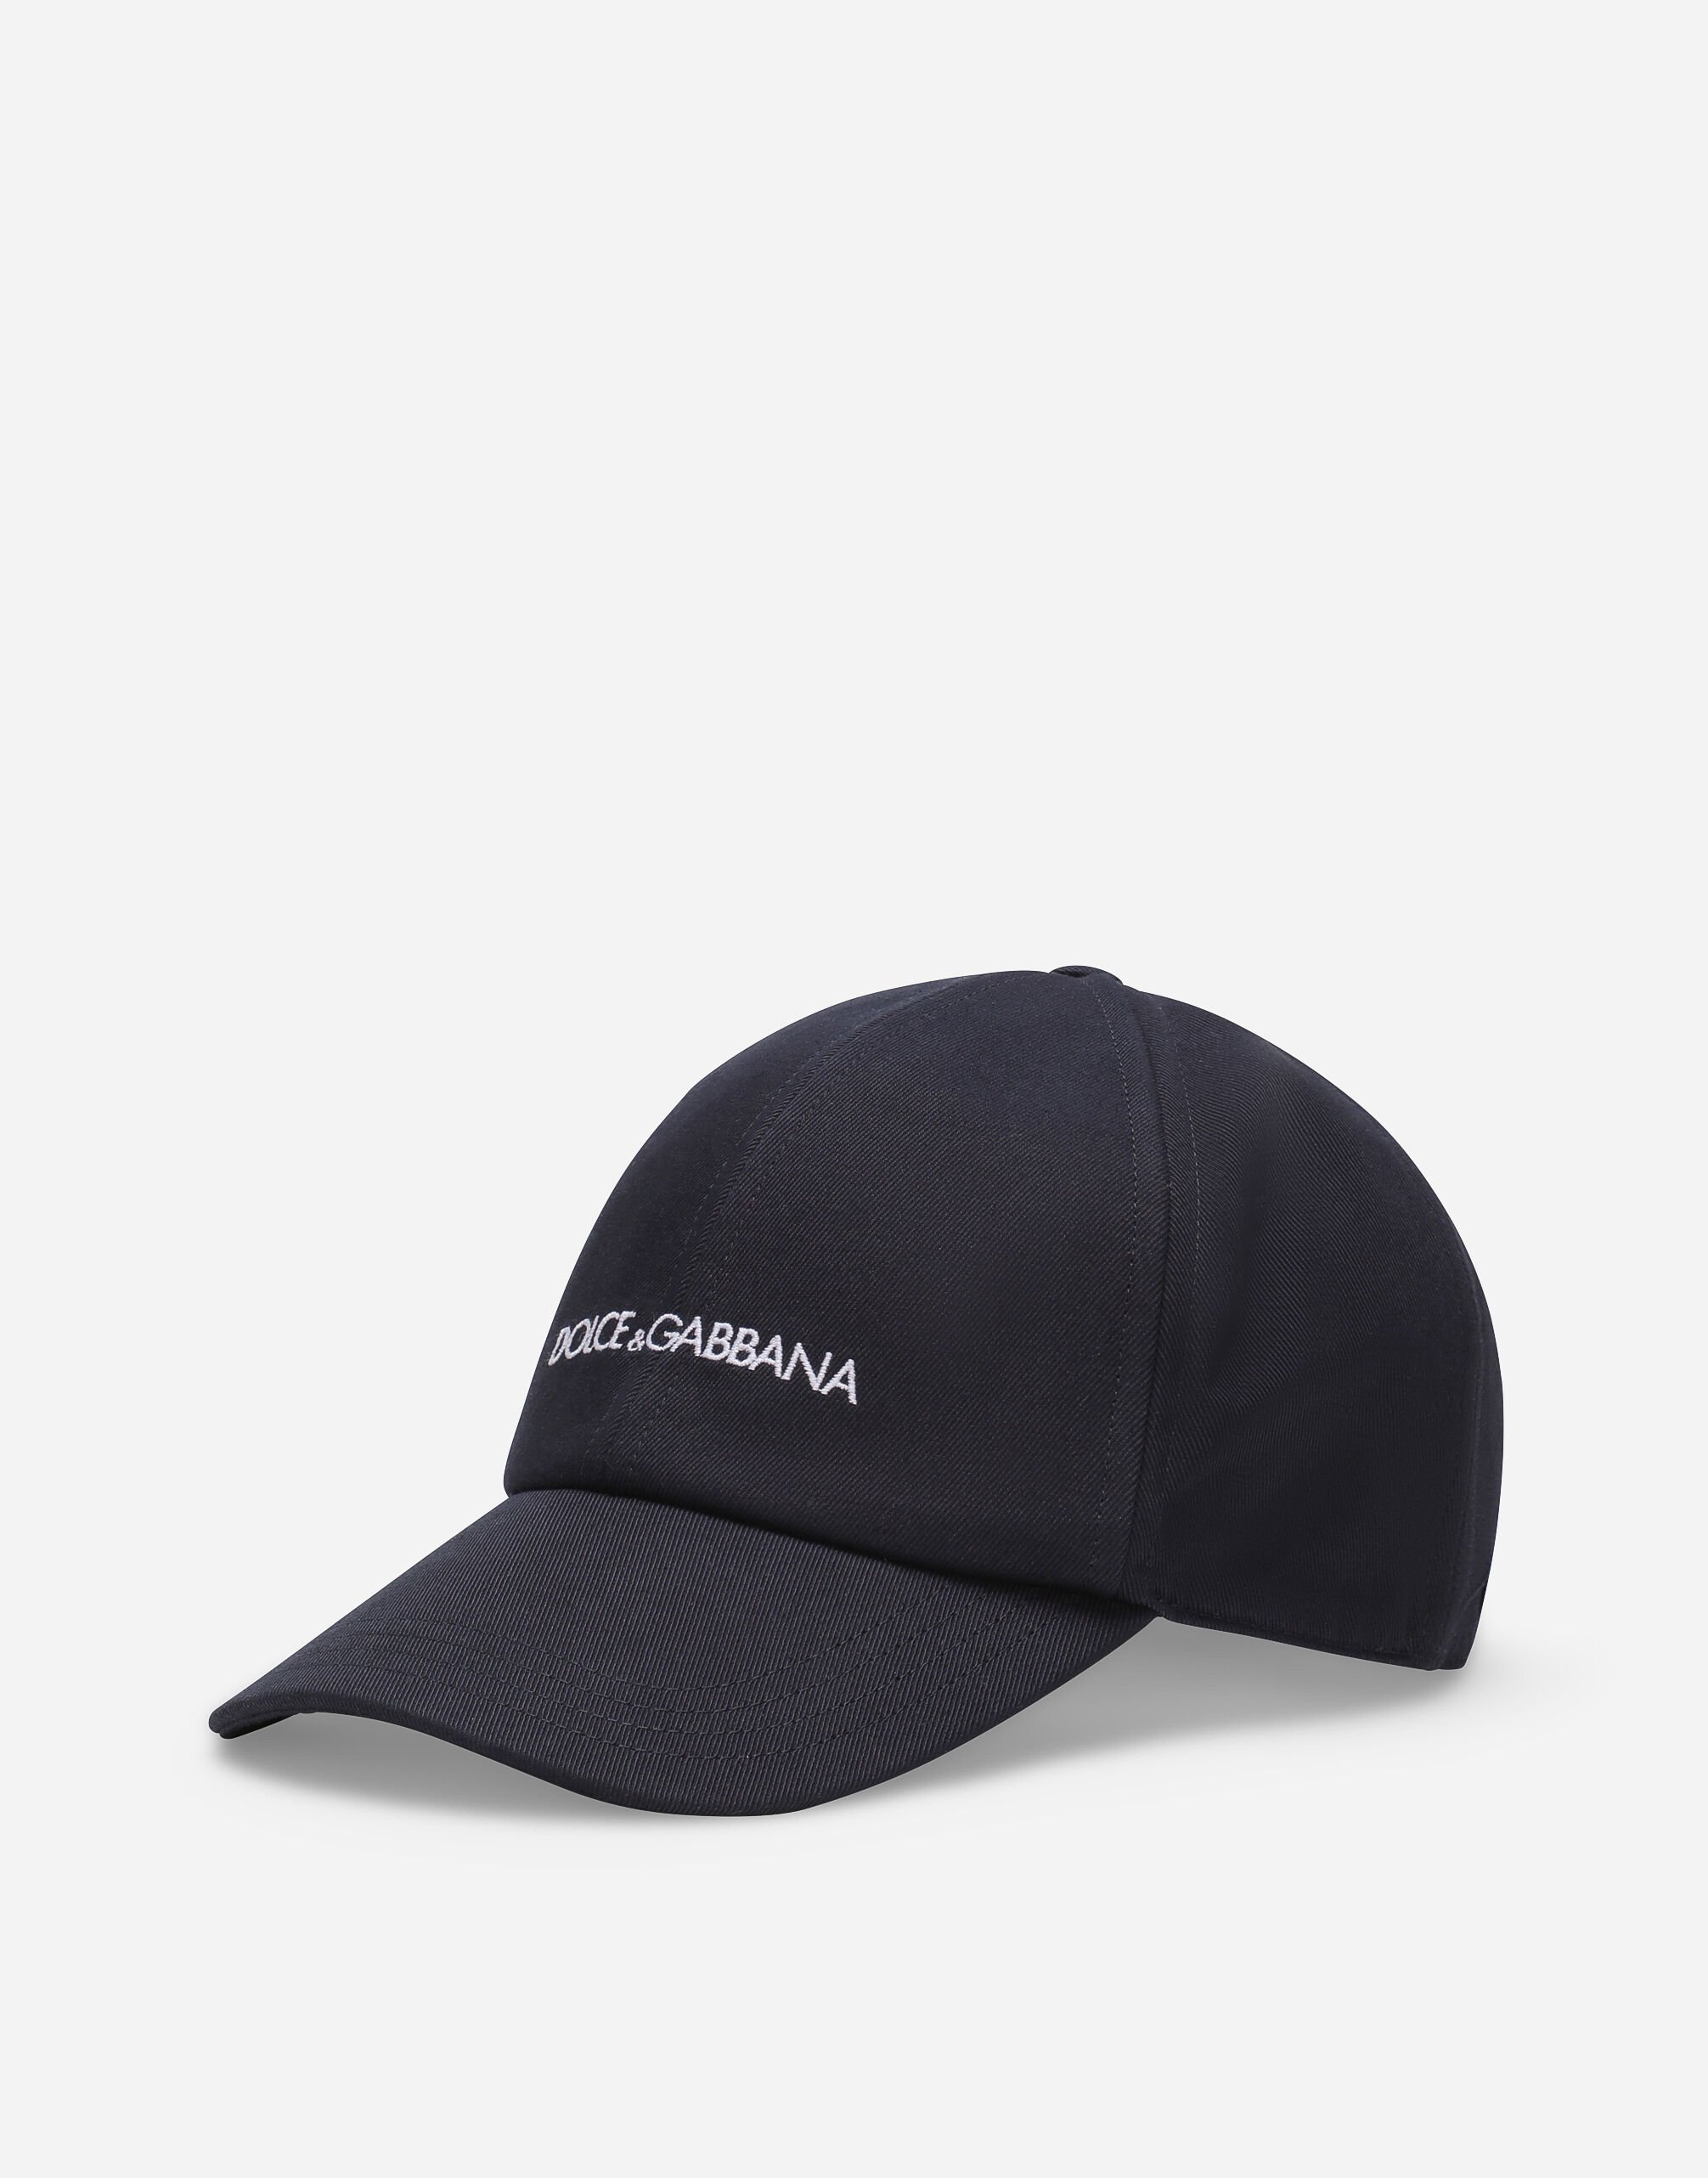 Dolce & Gabbana Cotton baseball cap with Dolce&Gabbana logo Print GH764AFS6N5